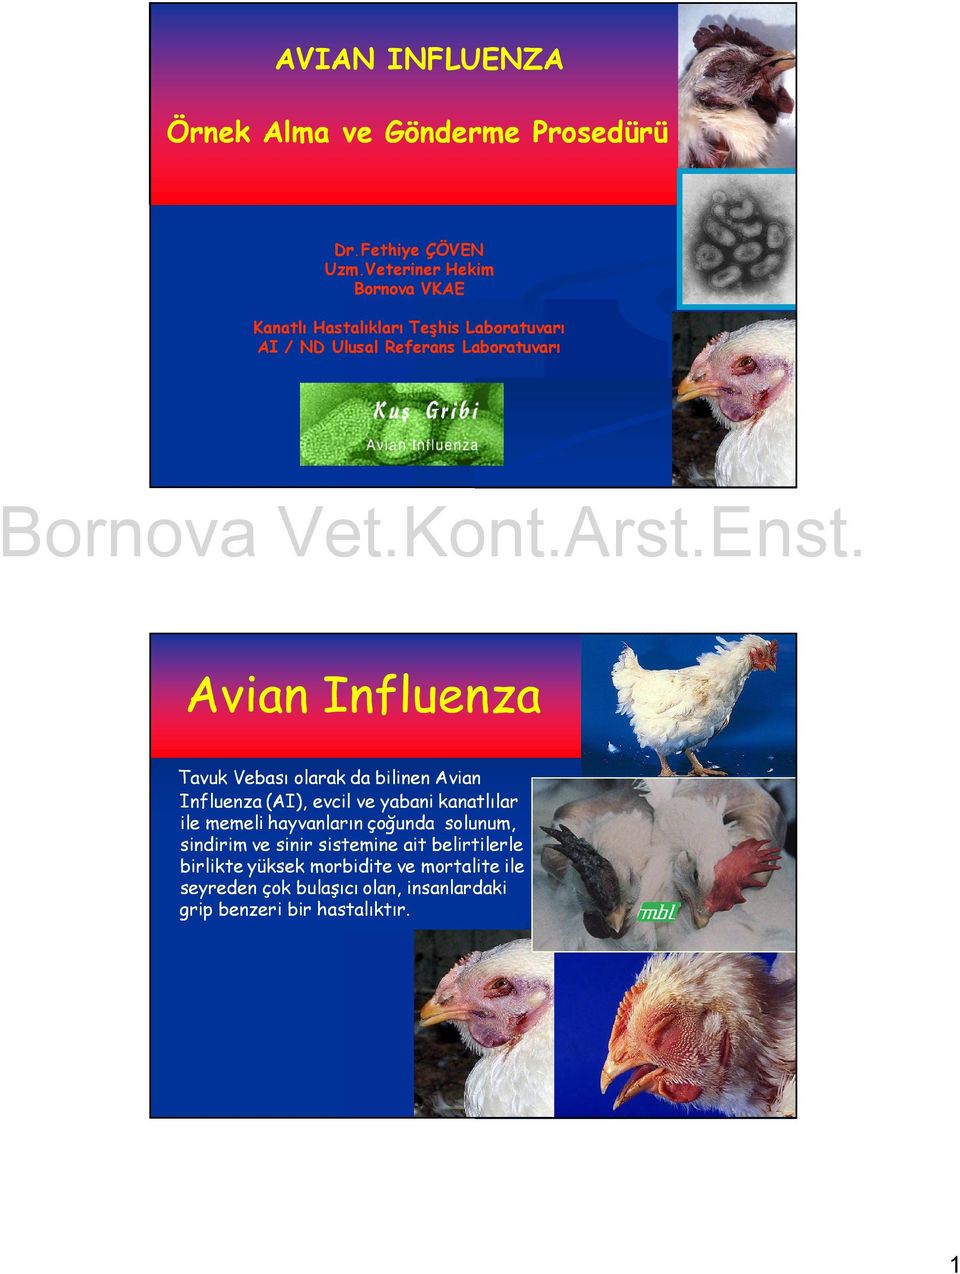 Influenza Tavuk Vebası larak da bilinen Avian Influenza (AI), evcil ve yabani kanatlılar ile memeli hayvanların